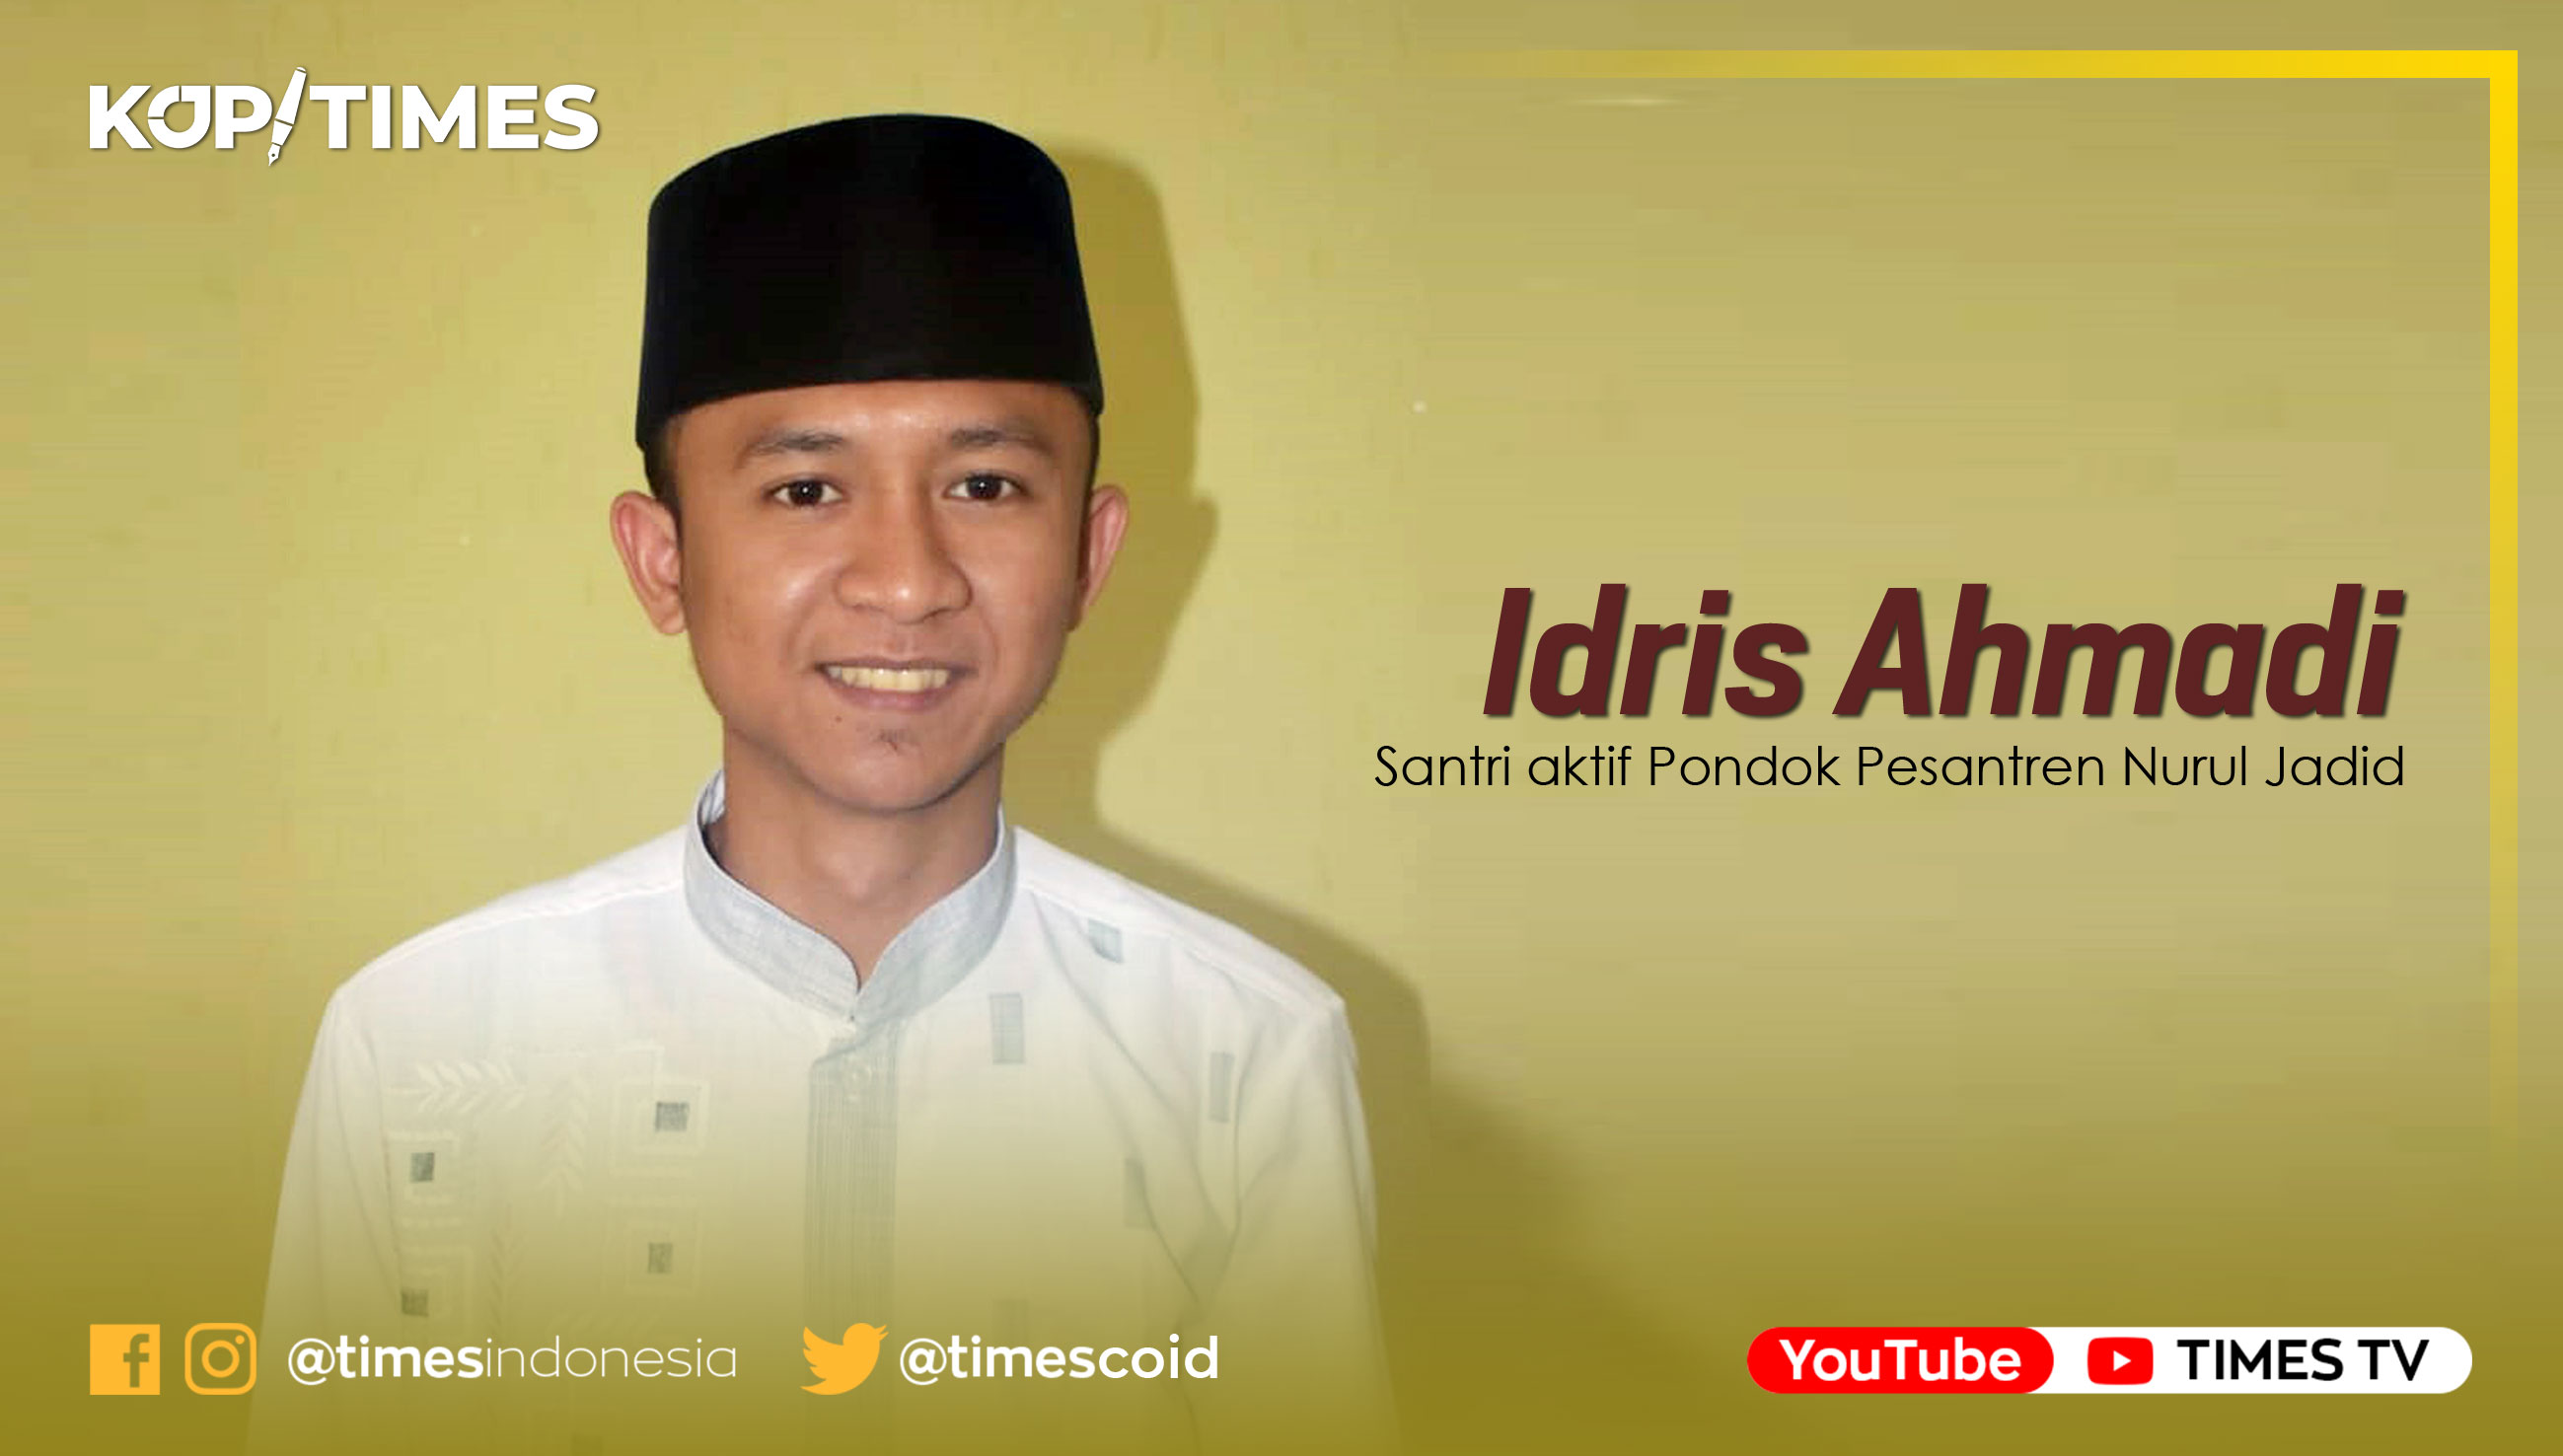 Idris Ahmadi, Santri aktif Pondok Pesantren Nurul Jadid.